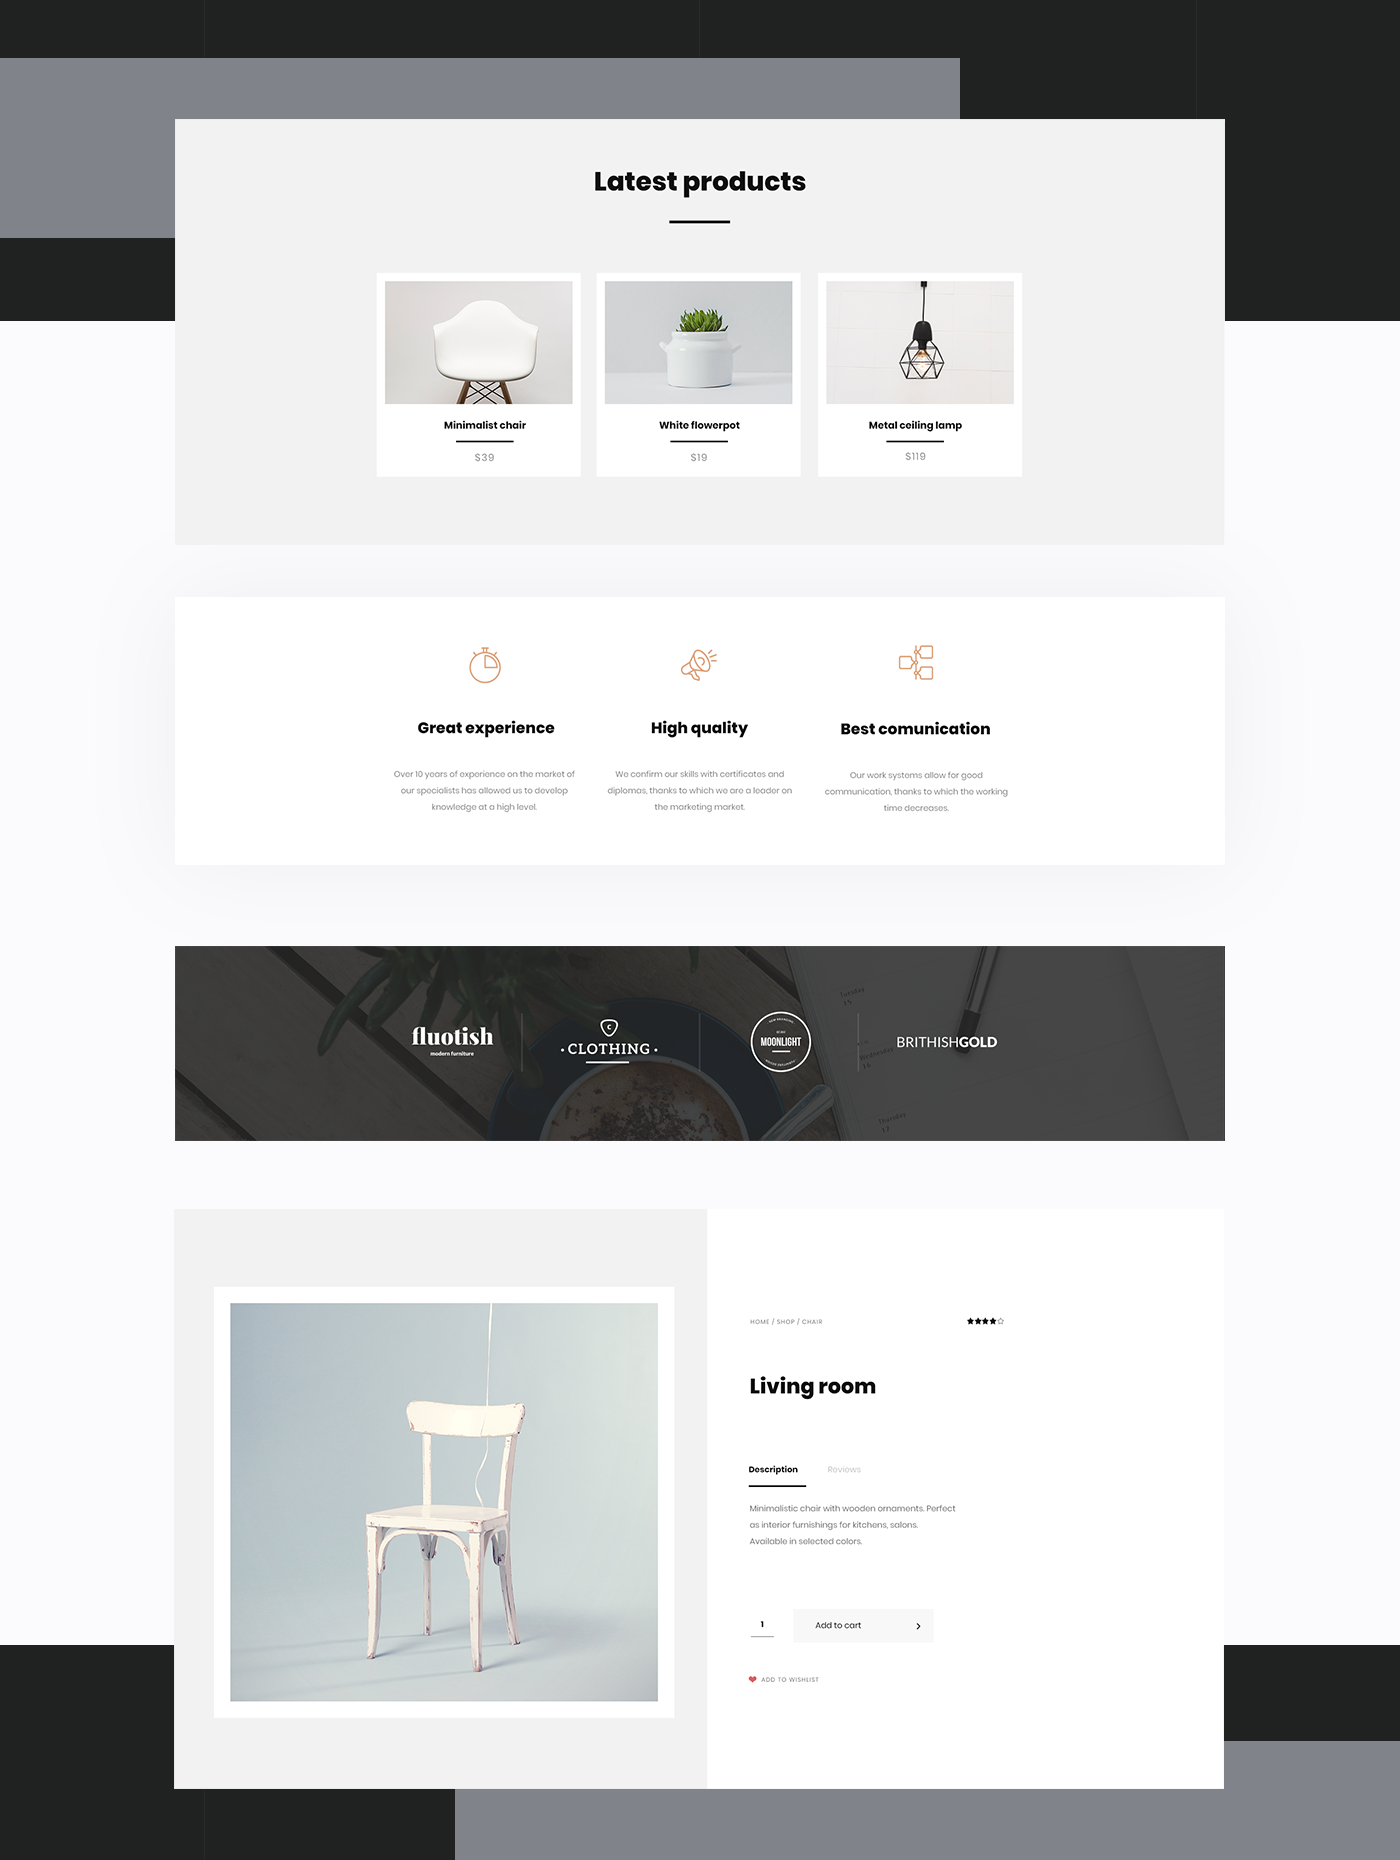 Web Design  UI Theme kit minimalist clean elegant art